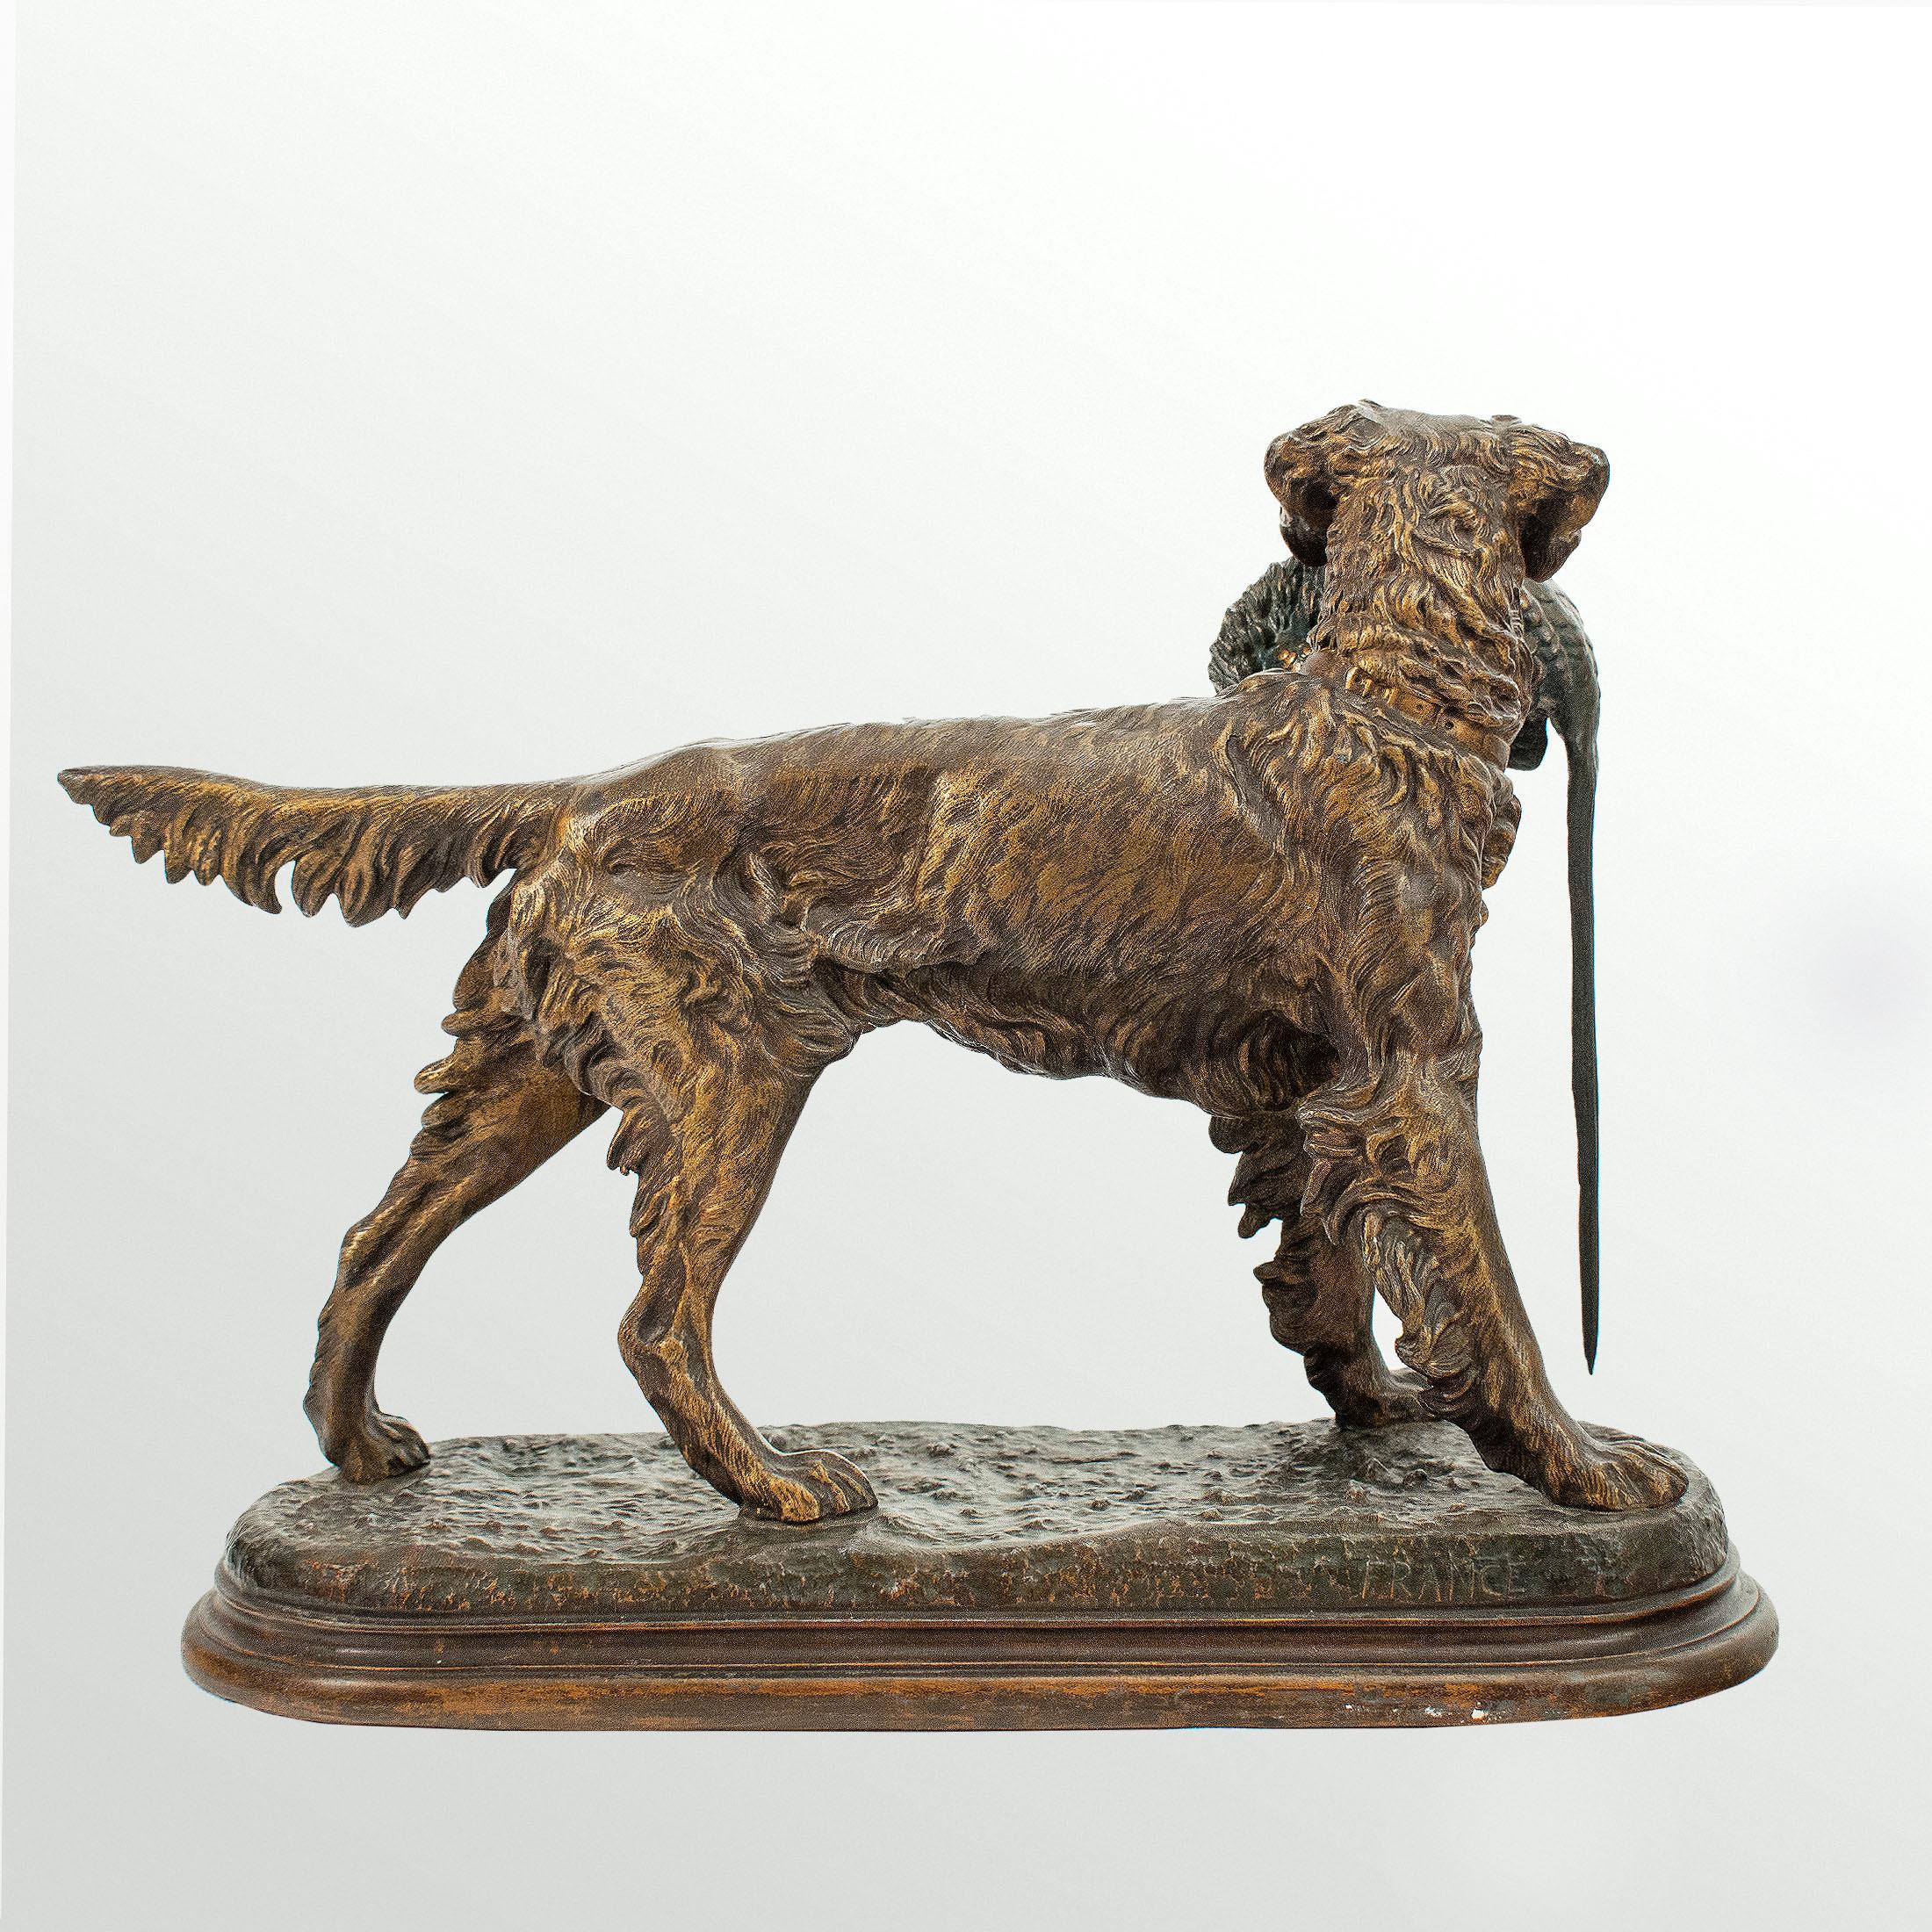 Große Statue aus patiniertem Zinn. Jagdhund, der einen Fasan hält, signiert Jules MOIGNIEZ (1835-1894).

31 cm hoch x 37 cm breit.

Jules Moigniez war ein französischer Tierbildhauer des 19. Jahrhunderts. Seine Werke wurden hauptsächlich in Bronze